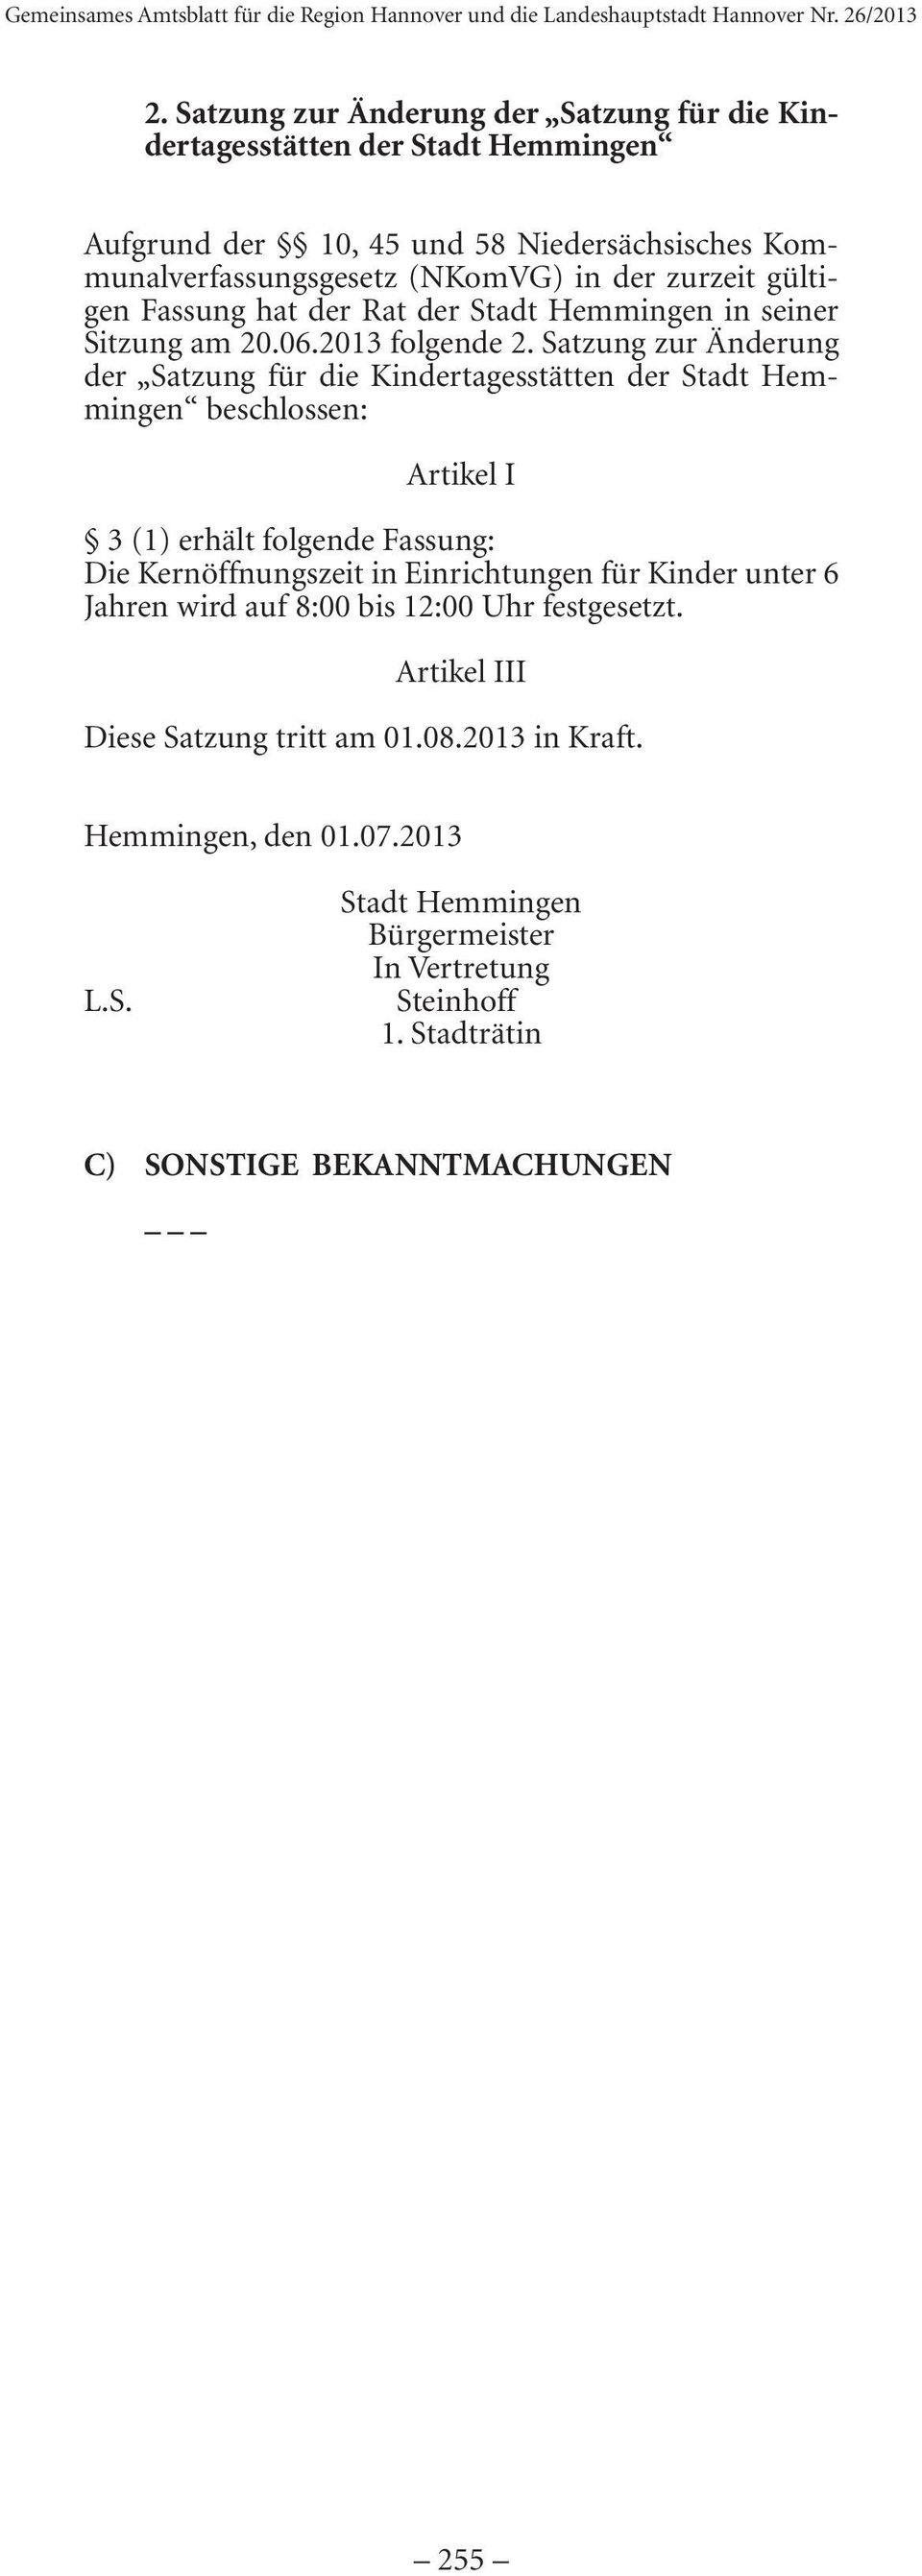 Satzung zur Änderung der Satzung für die Kindertagesstätten der Stadt Hemmingen beschlossen: Artikel I 3 (1) erhält folgende Fassung: Die Kernöffnungszeit in Einrichtungen